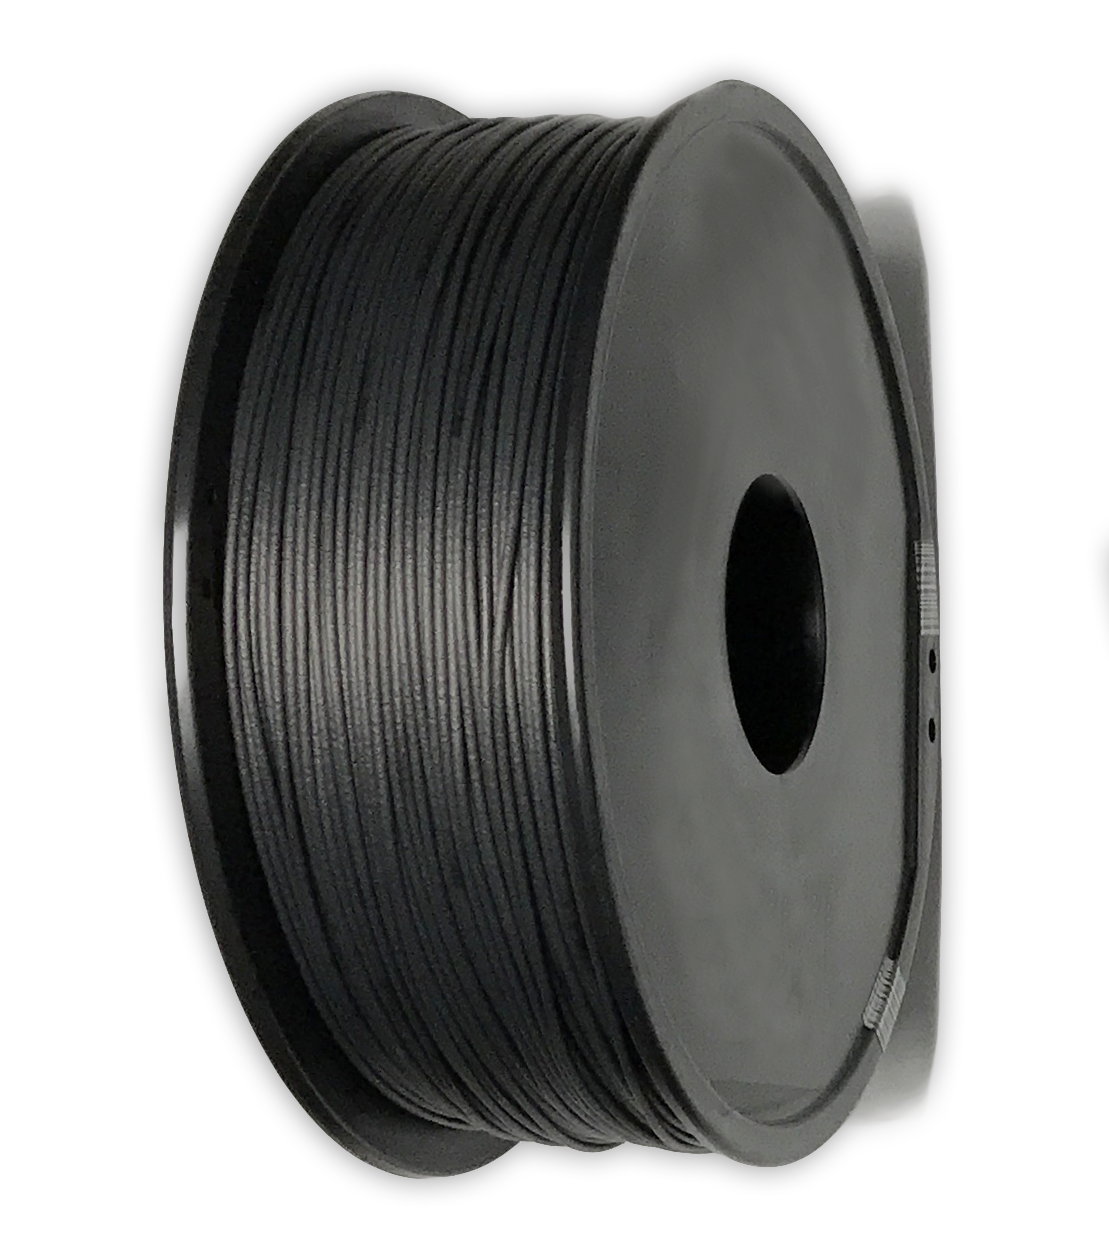 Buy Carbon Fiber PLA Filament, PLA Carbon Fiber 3D Printer